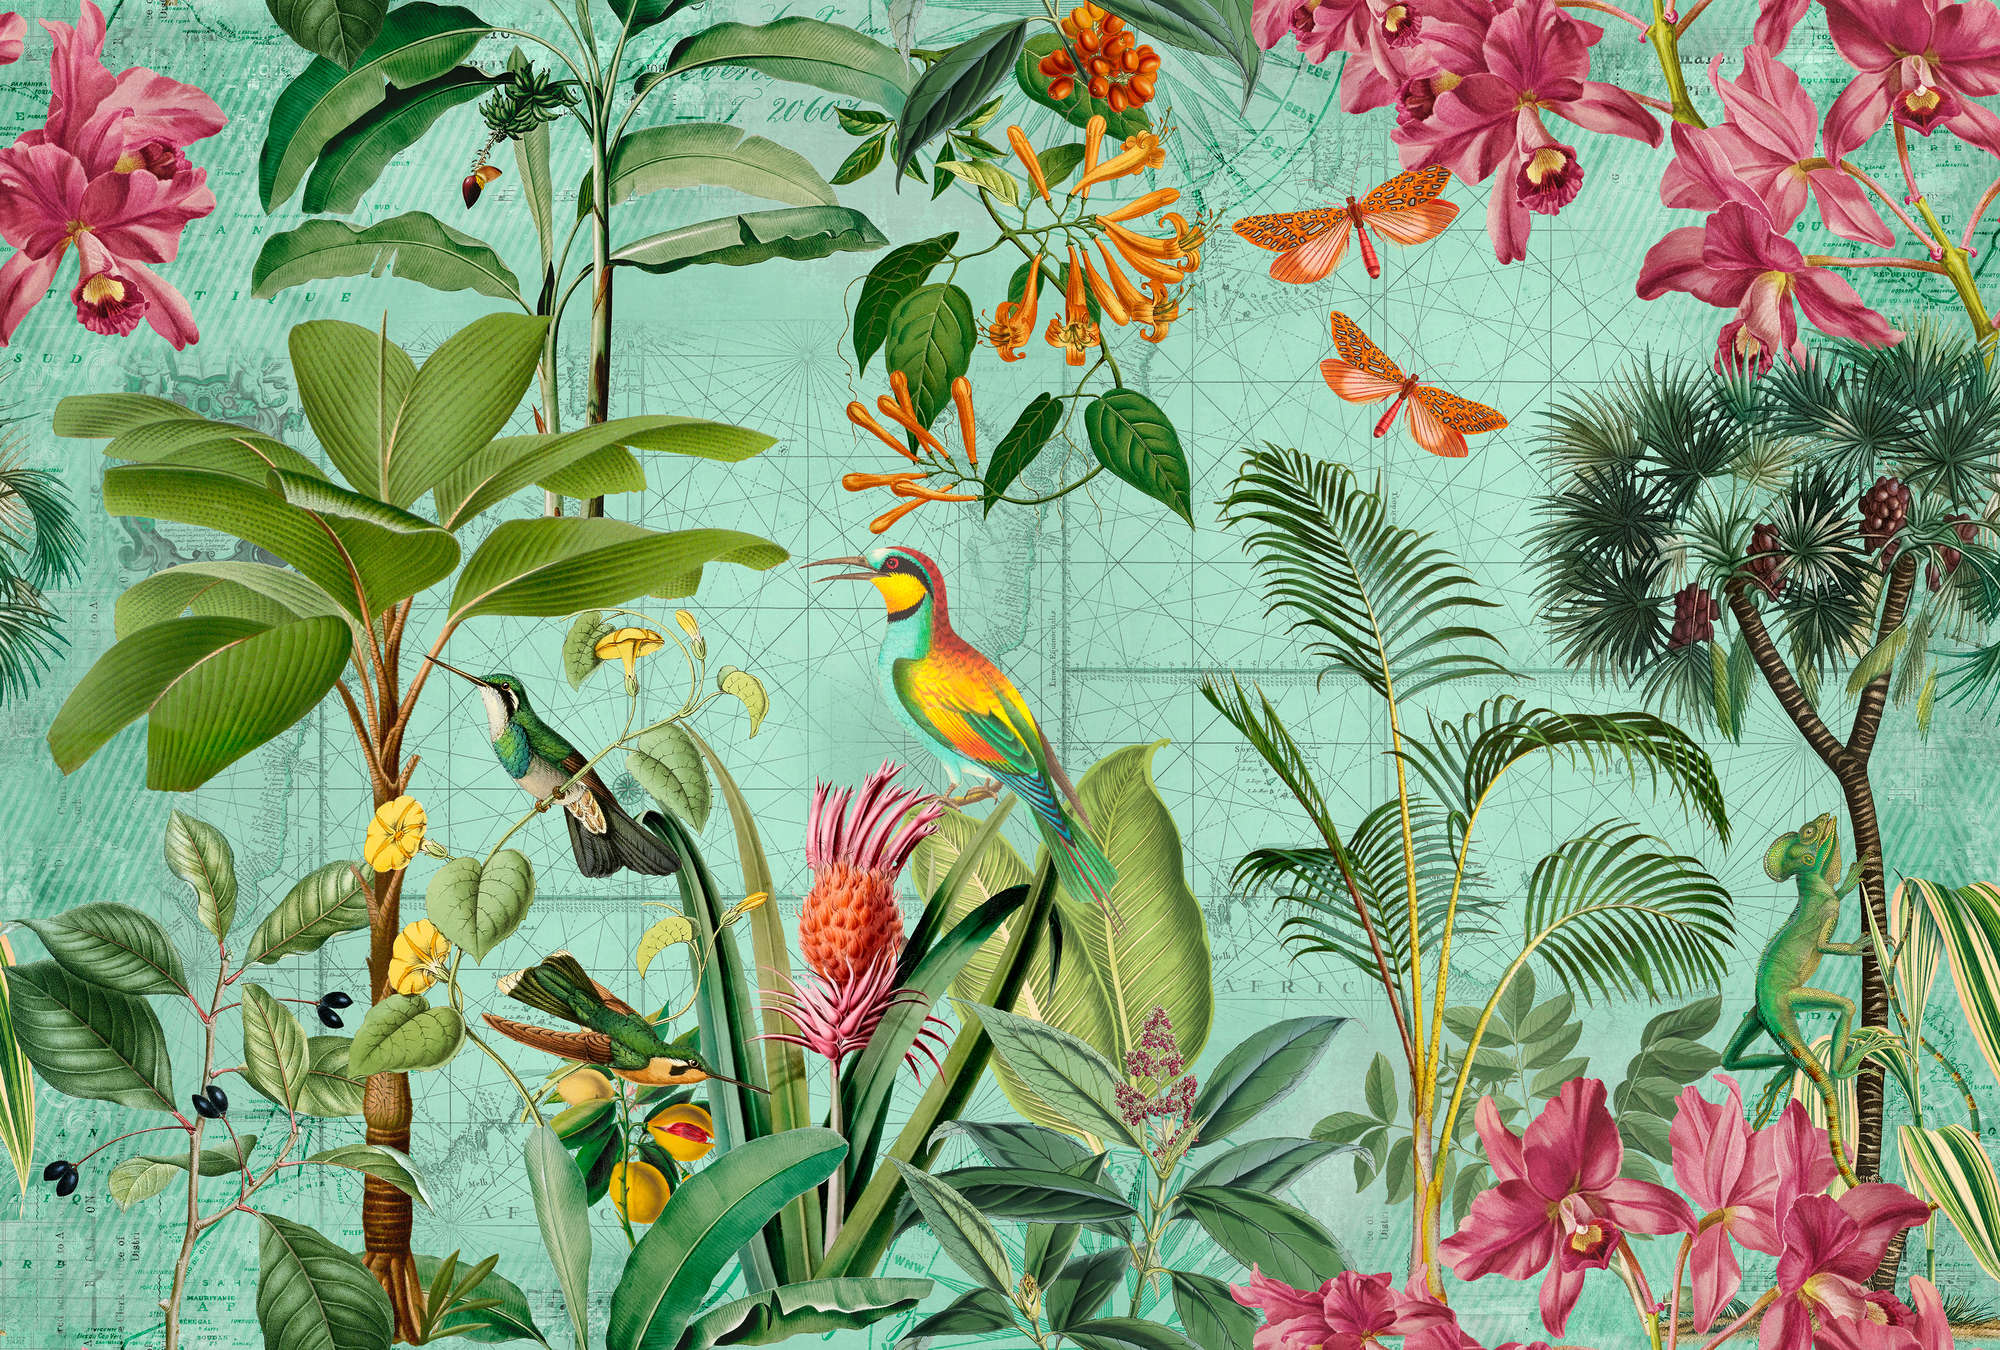             Kleurrijke jungle muurschildering met bomen, bloemen & dieren
        